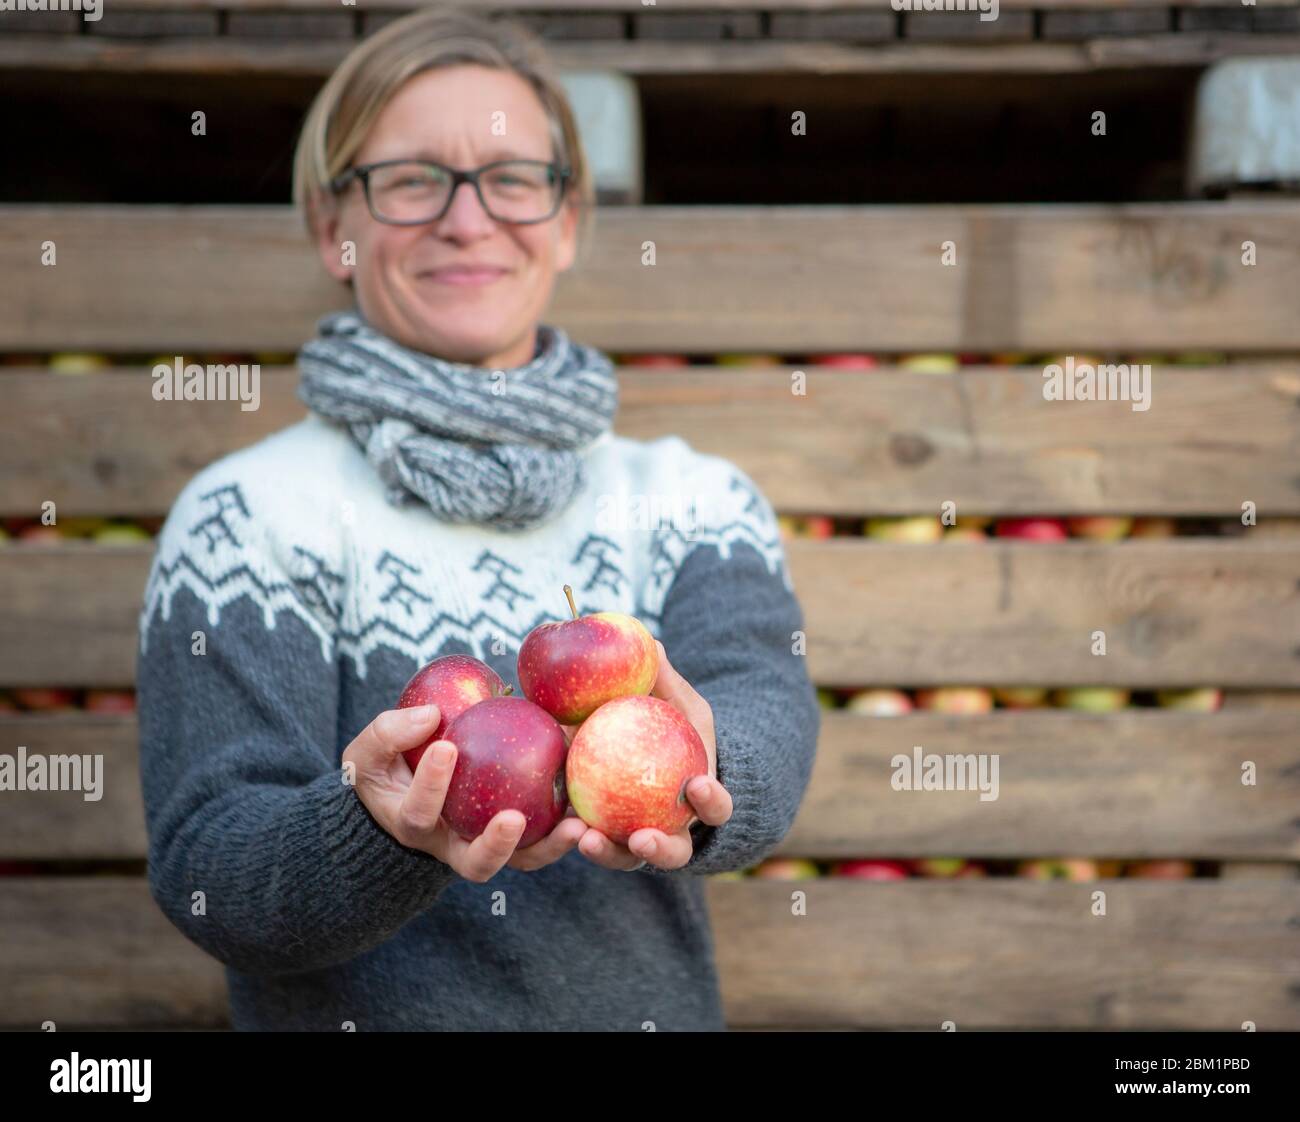 Glückliche Frau, die mehrere Äpfel in den Händen hält vor geernteten Äpfeln. Sie hat ein glückliches, freundliches Lächeln. Der Schwerpunkt liegt auf den Äpfeln. Stockfoto